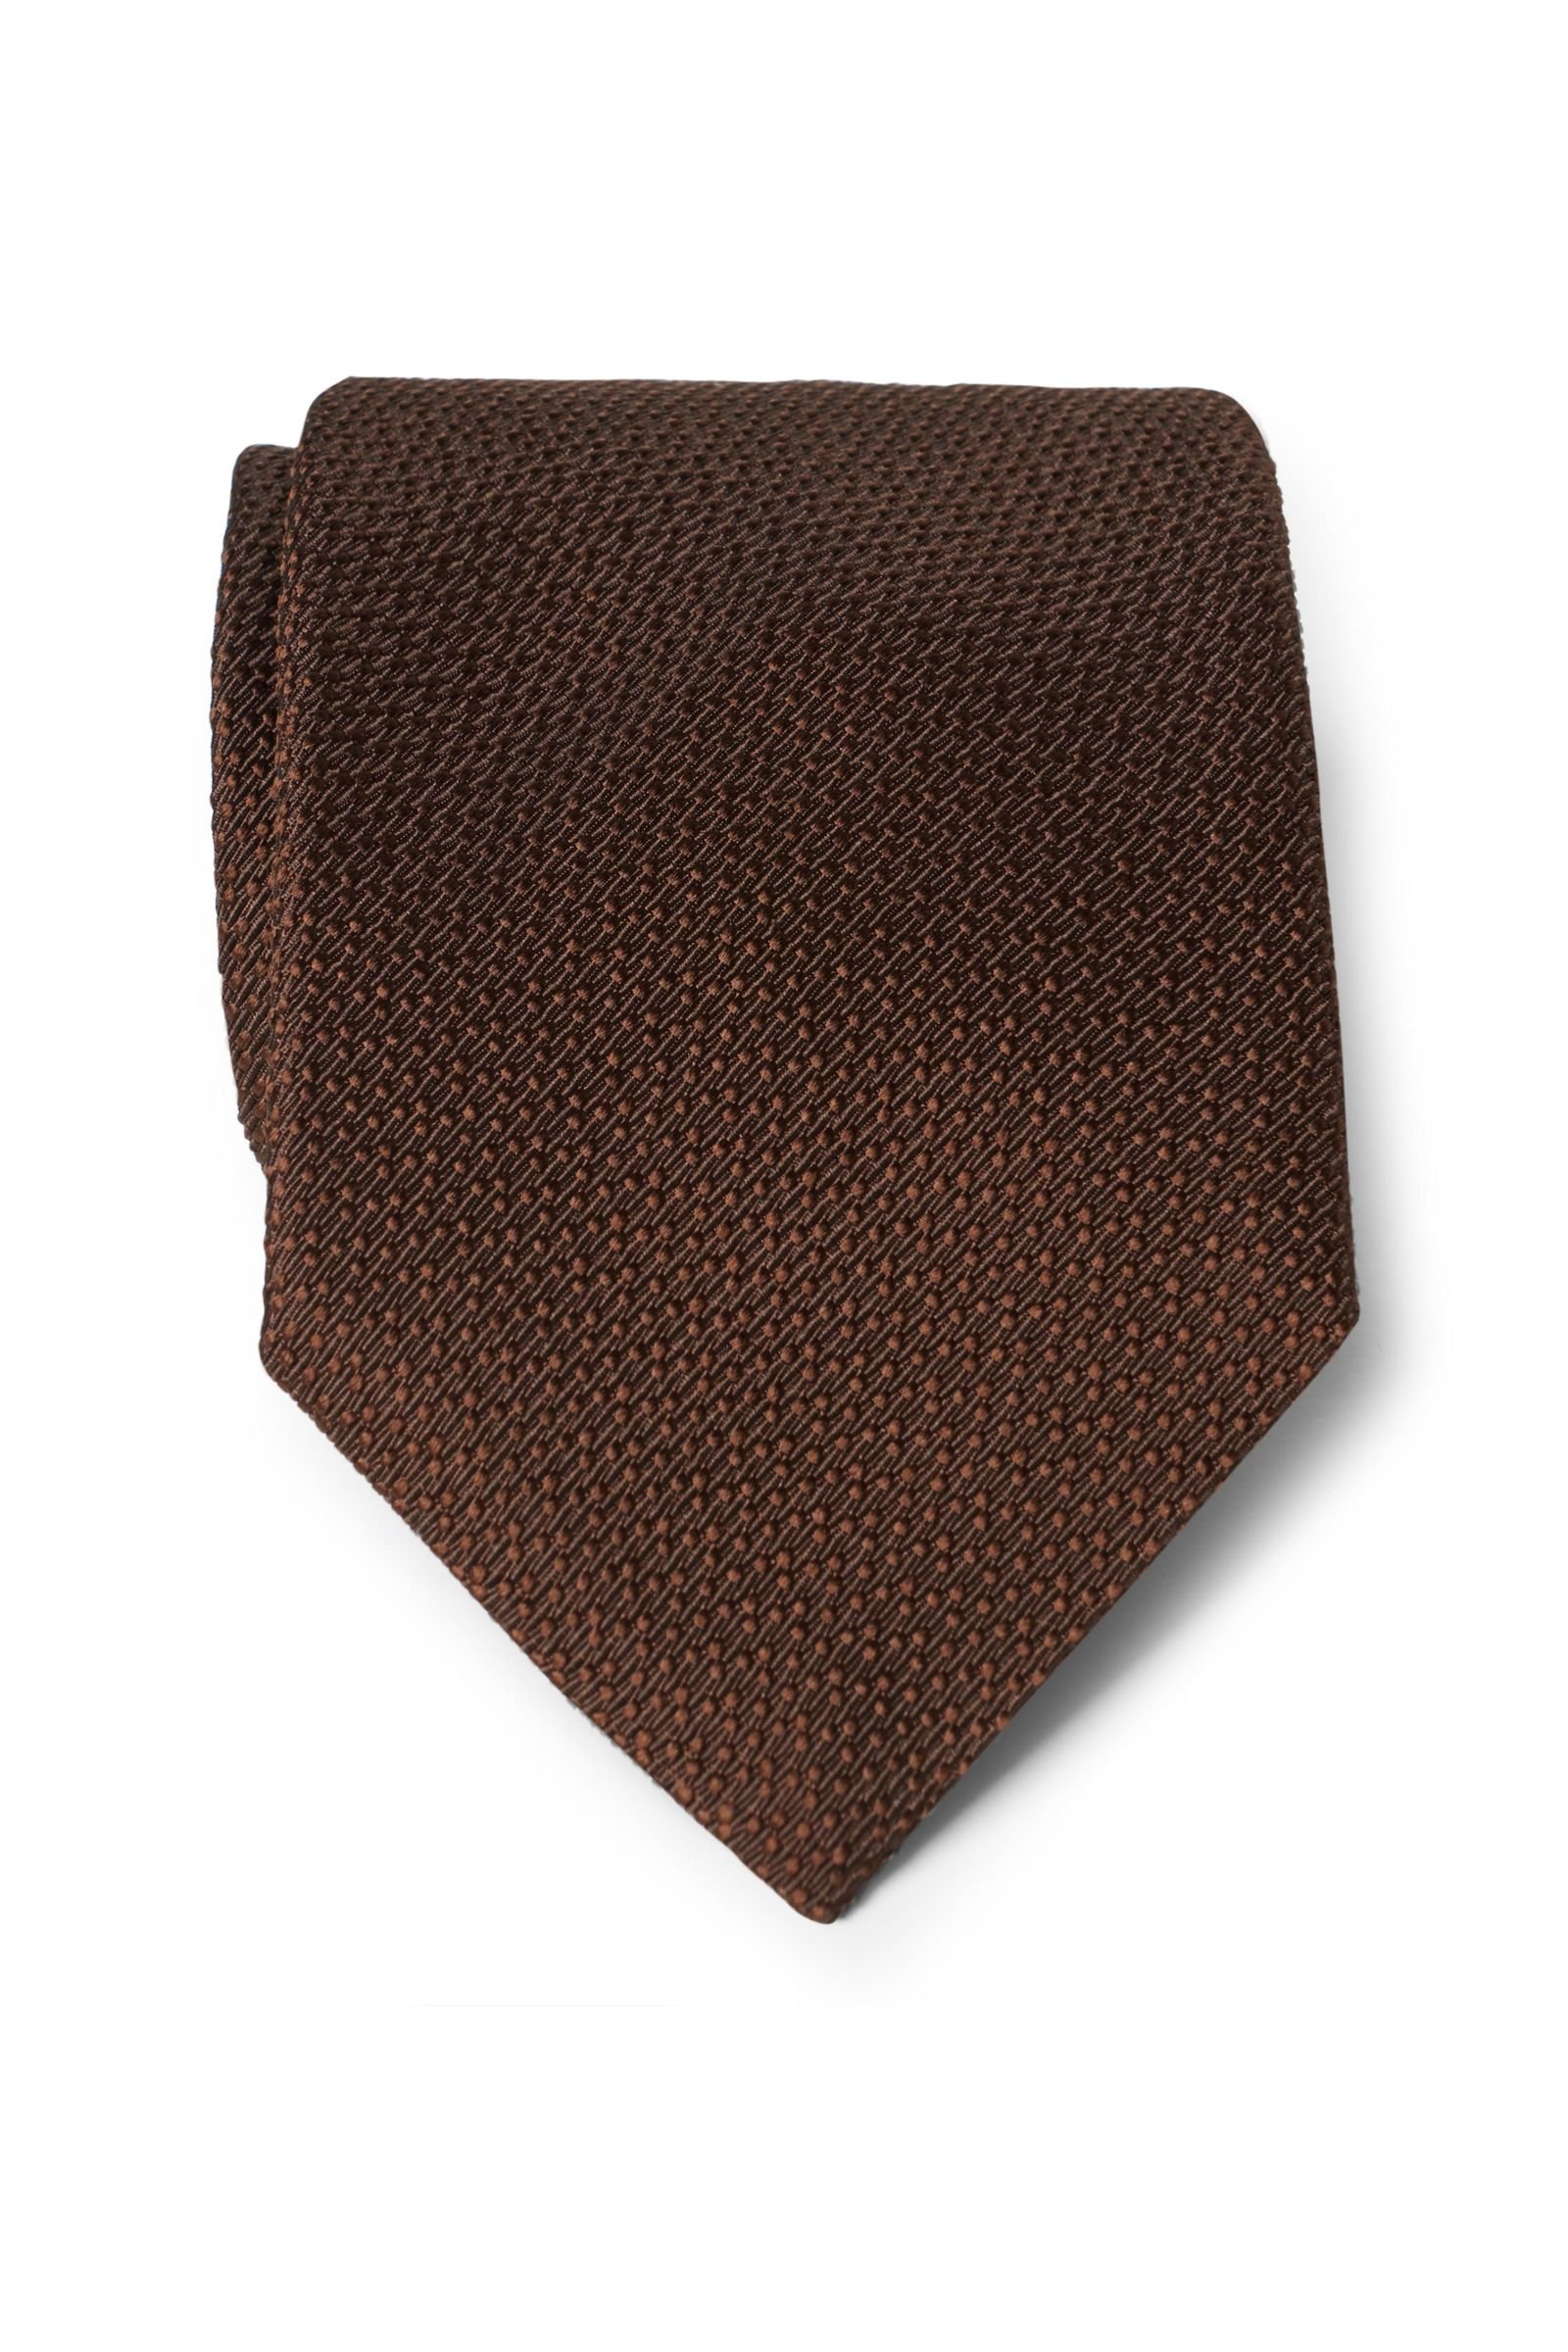 Silk tie dark brown